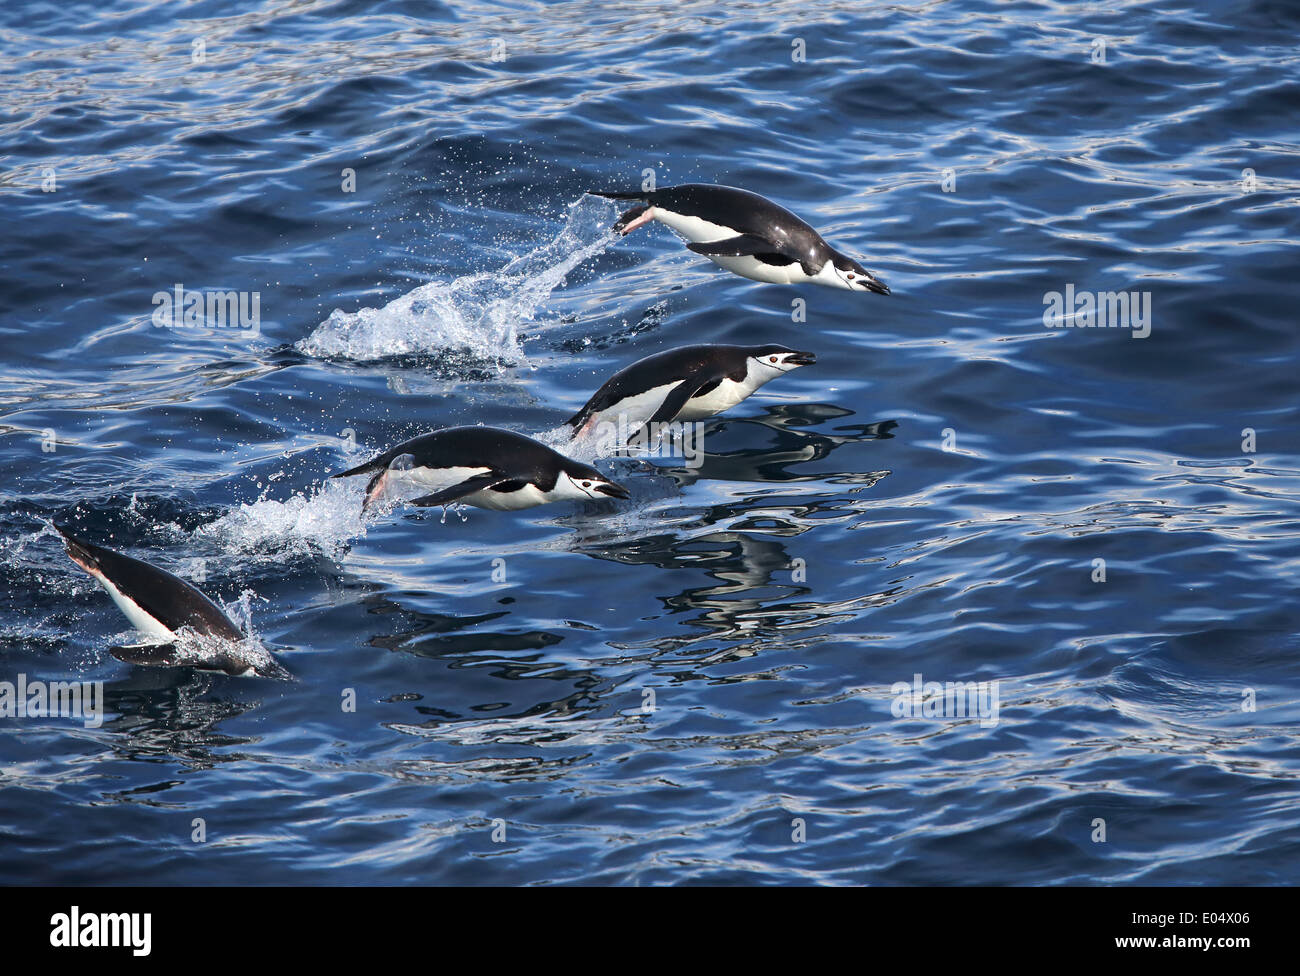 Pinguini Chinstrap nuoto e porpoising fuori dall'acqua, (Pygoscelis Antartide), penisola antartica, Antartide Foto Stock